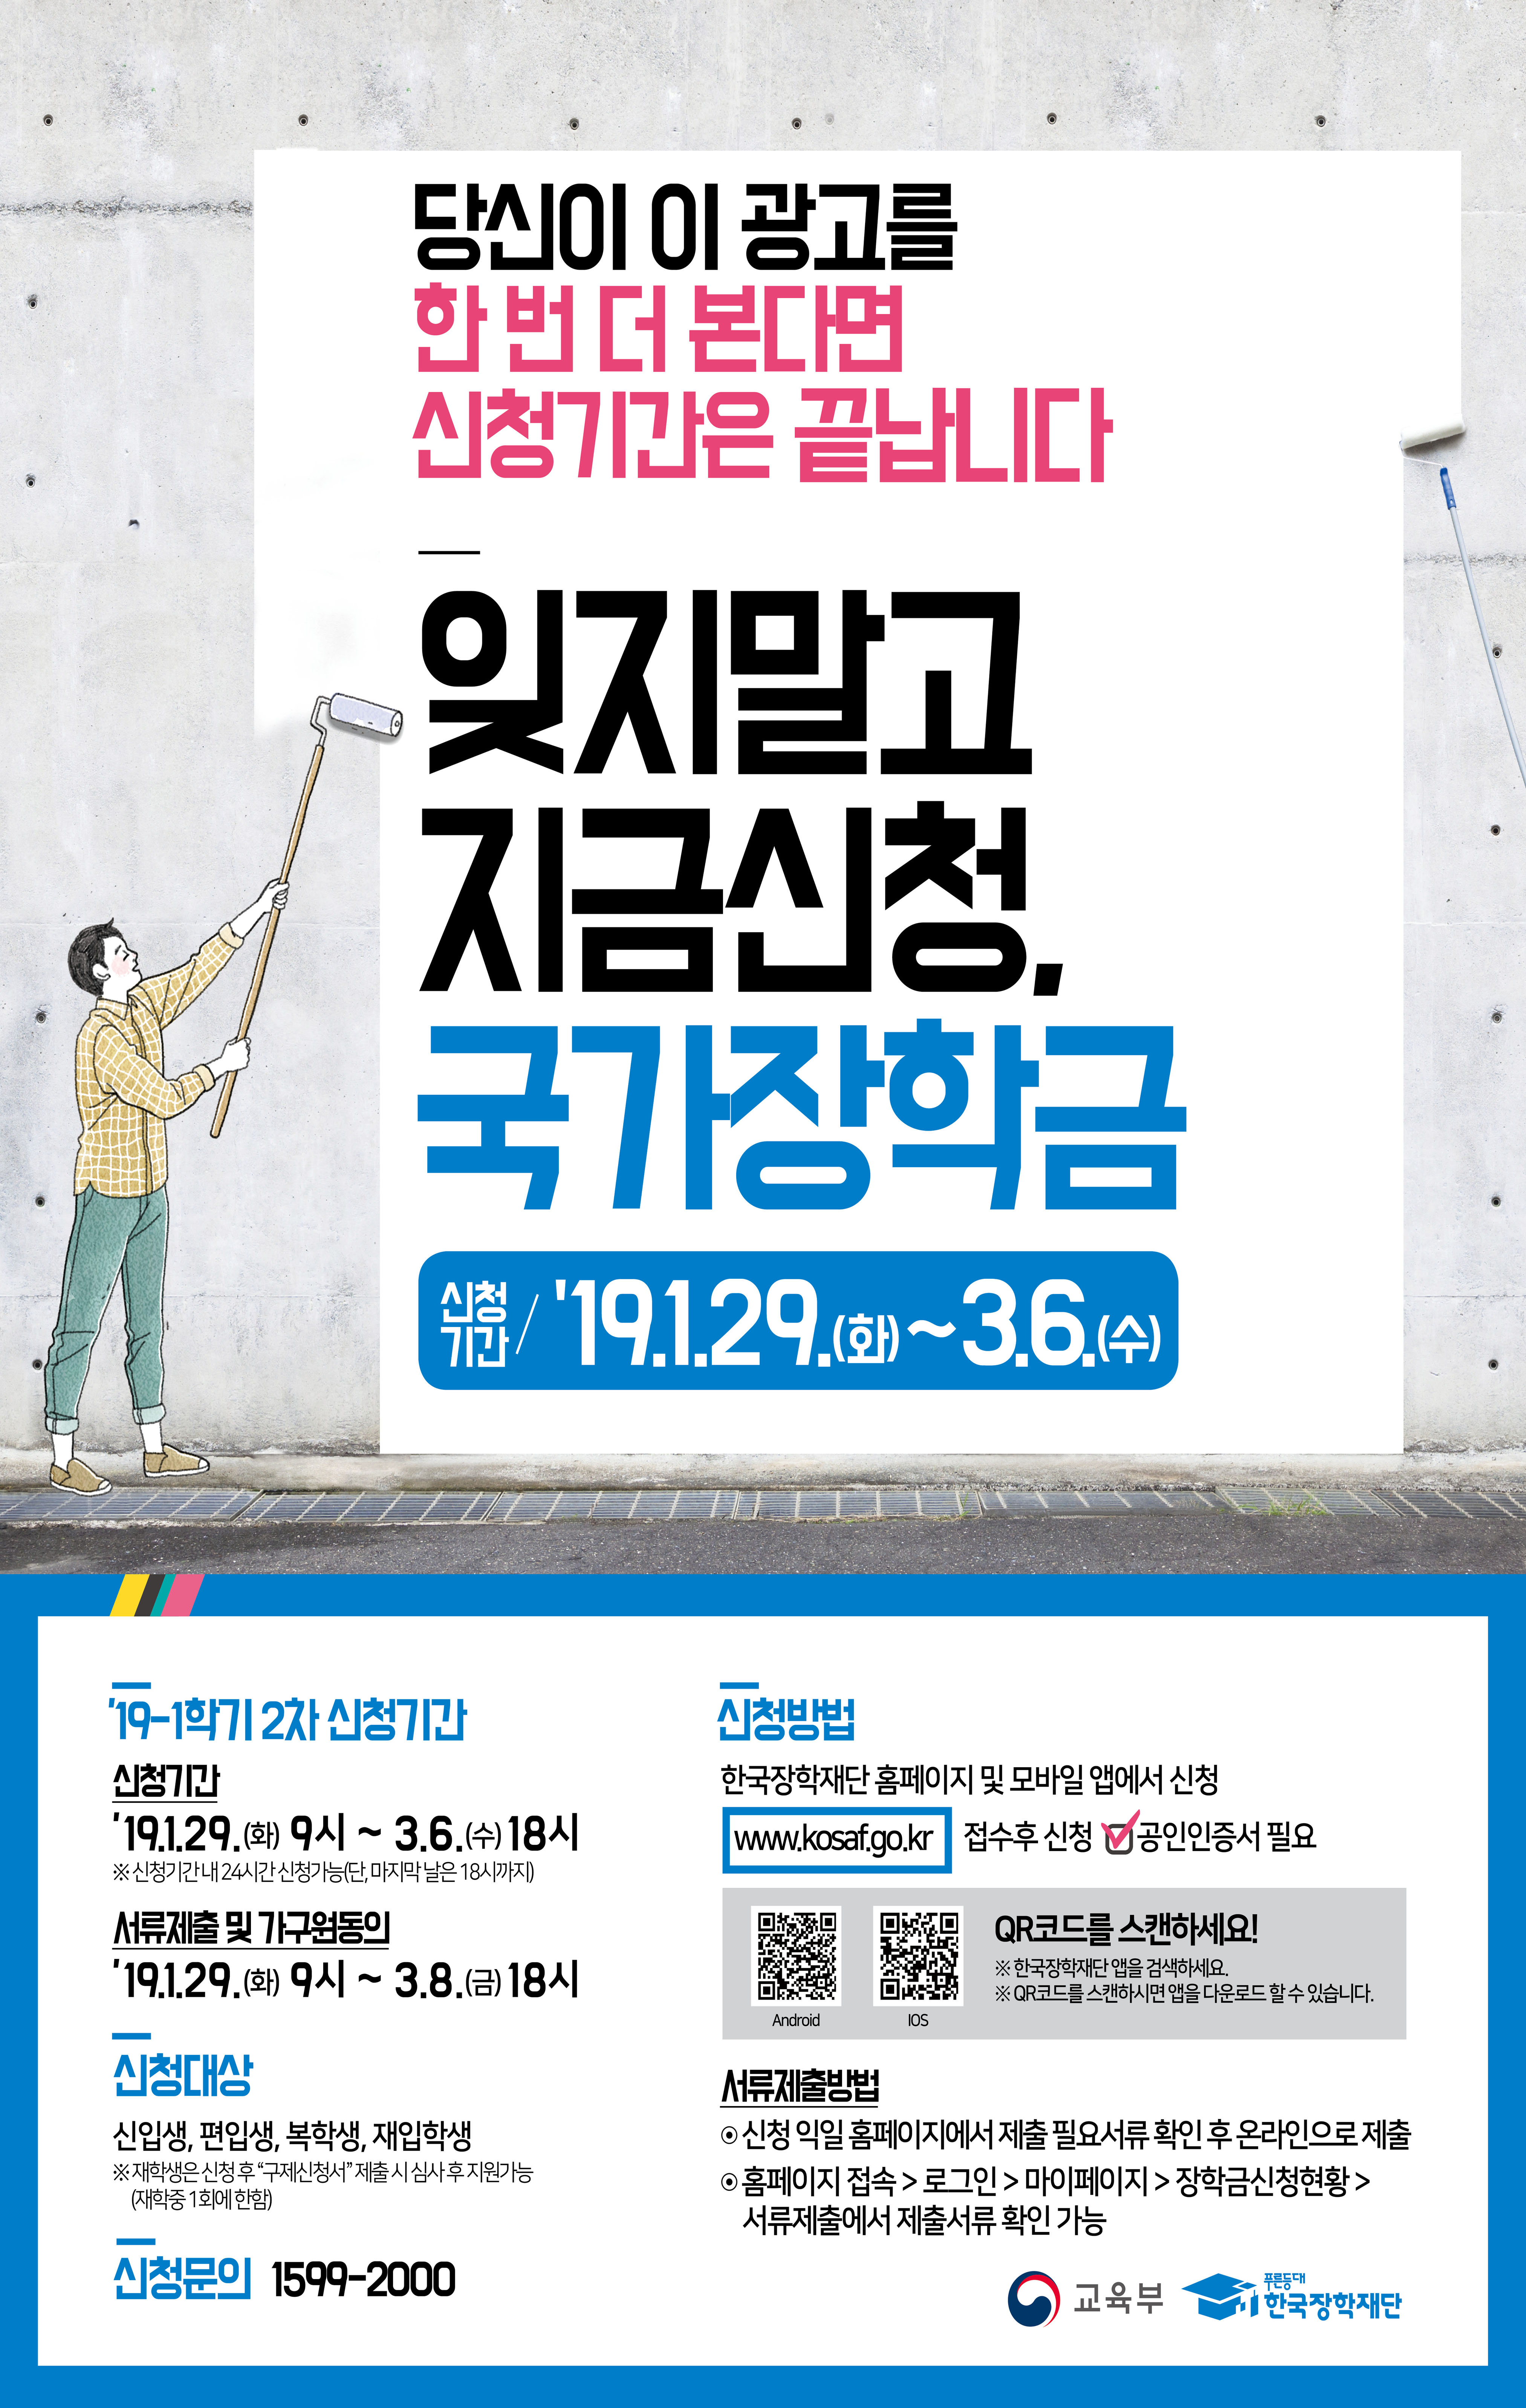 [중요]2019-1 국가장학금 2차 신청기간 안내